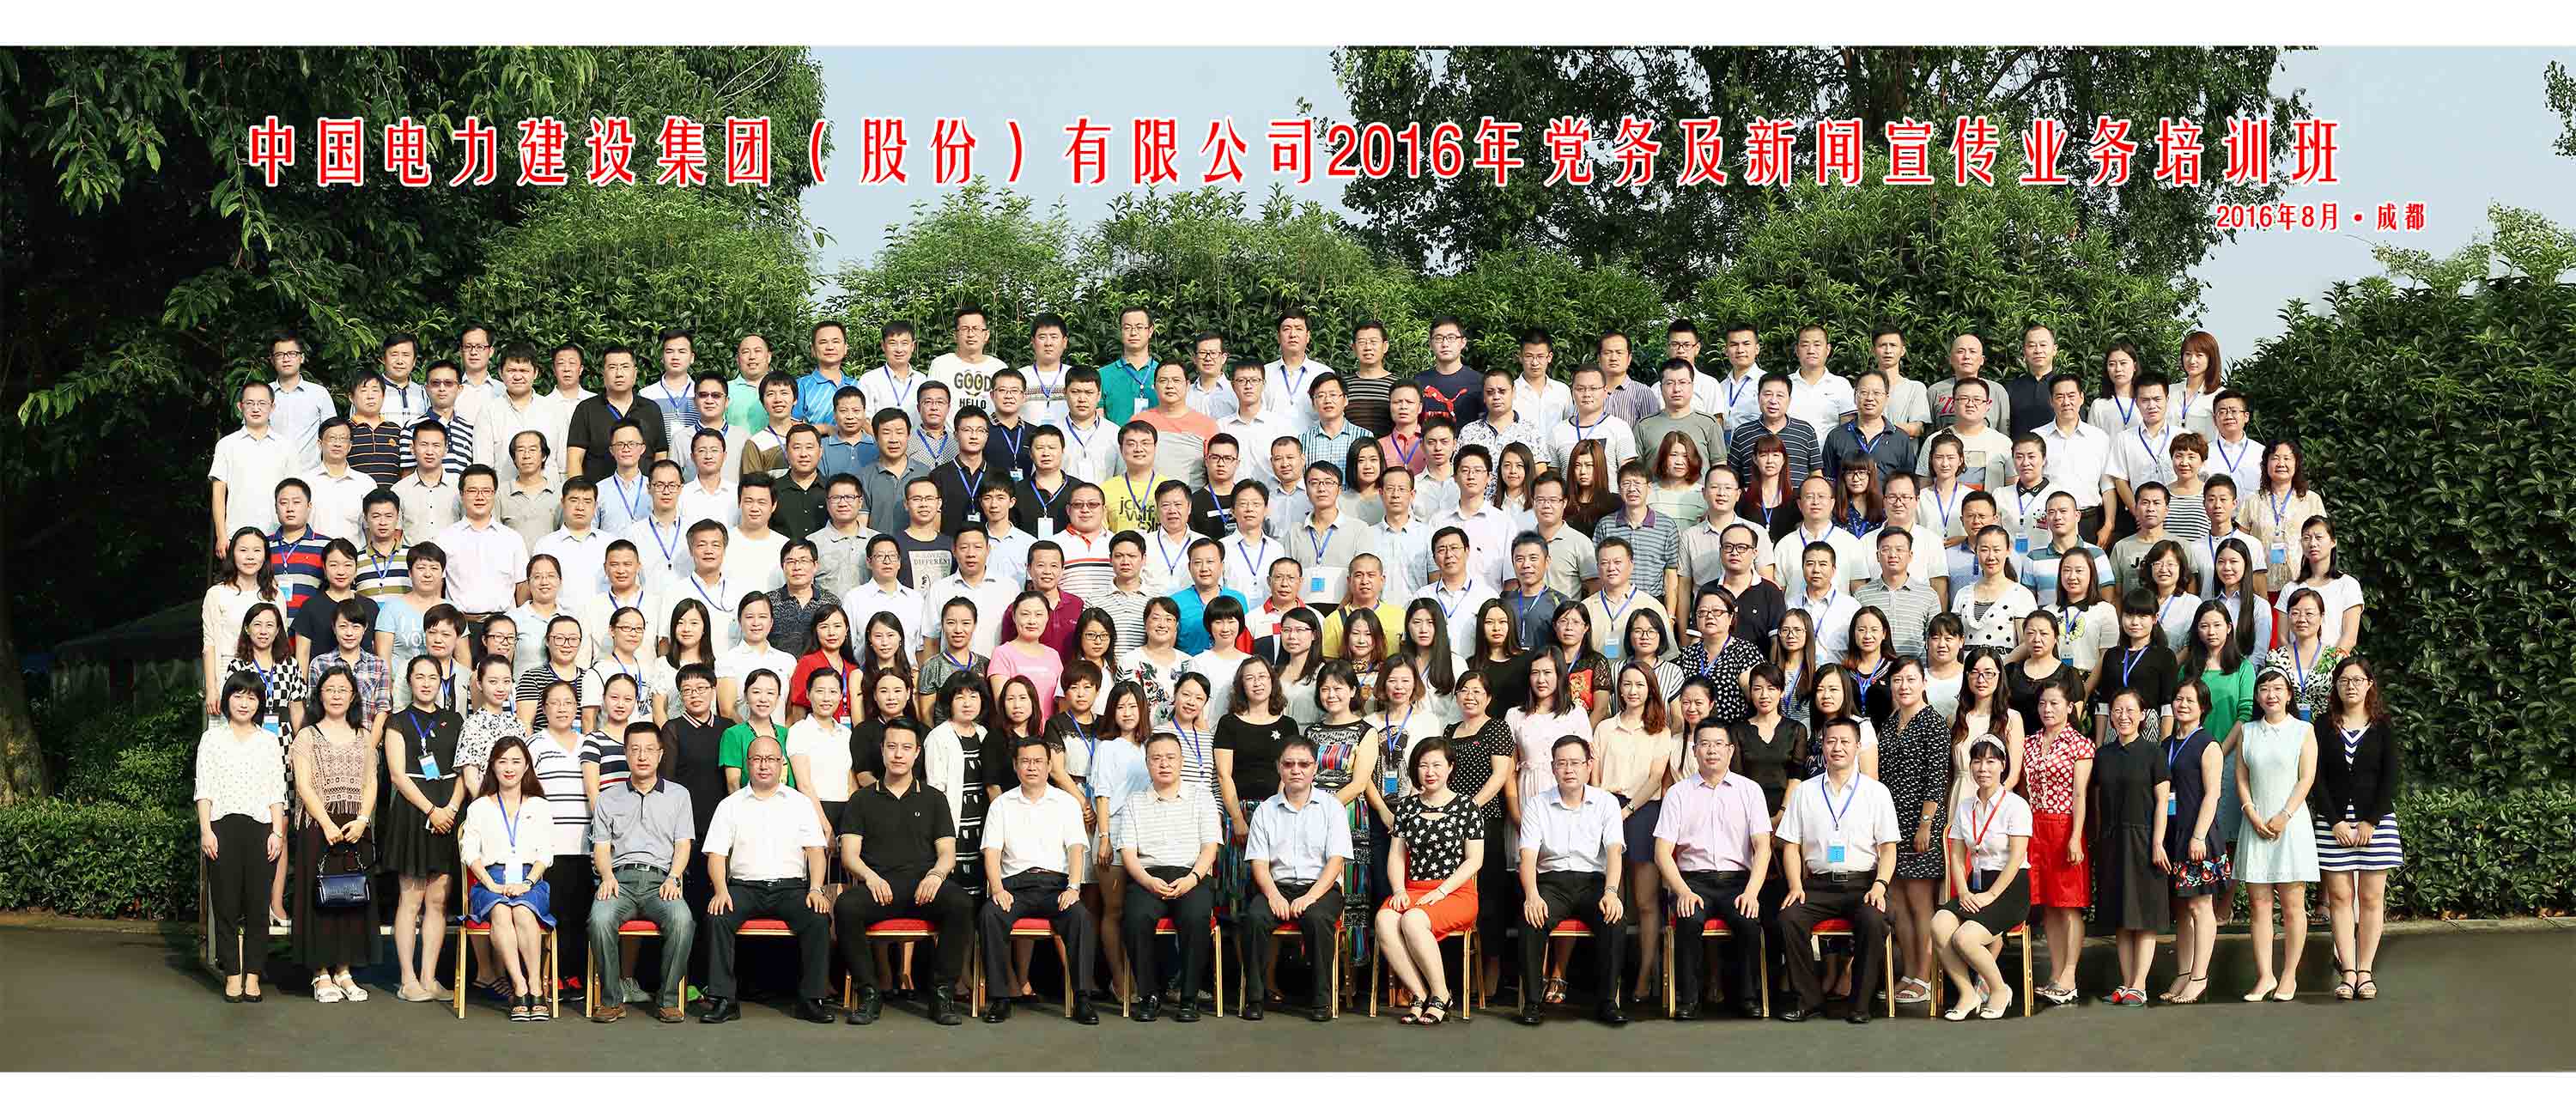 中国电力建设集团培训班集体照摄影